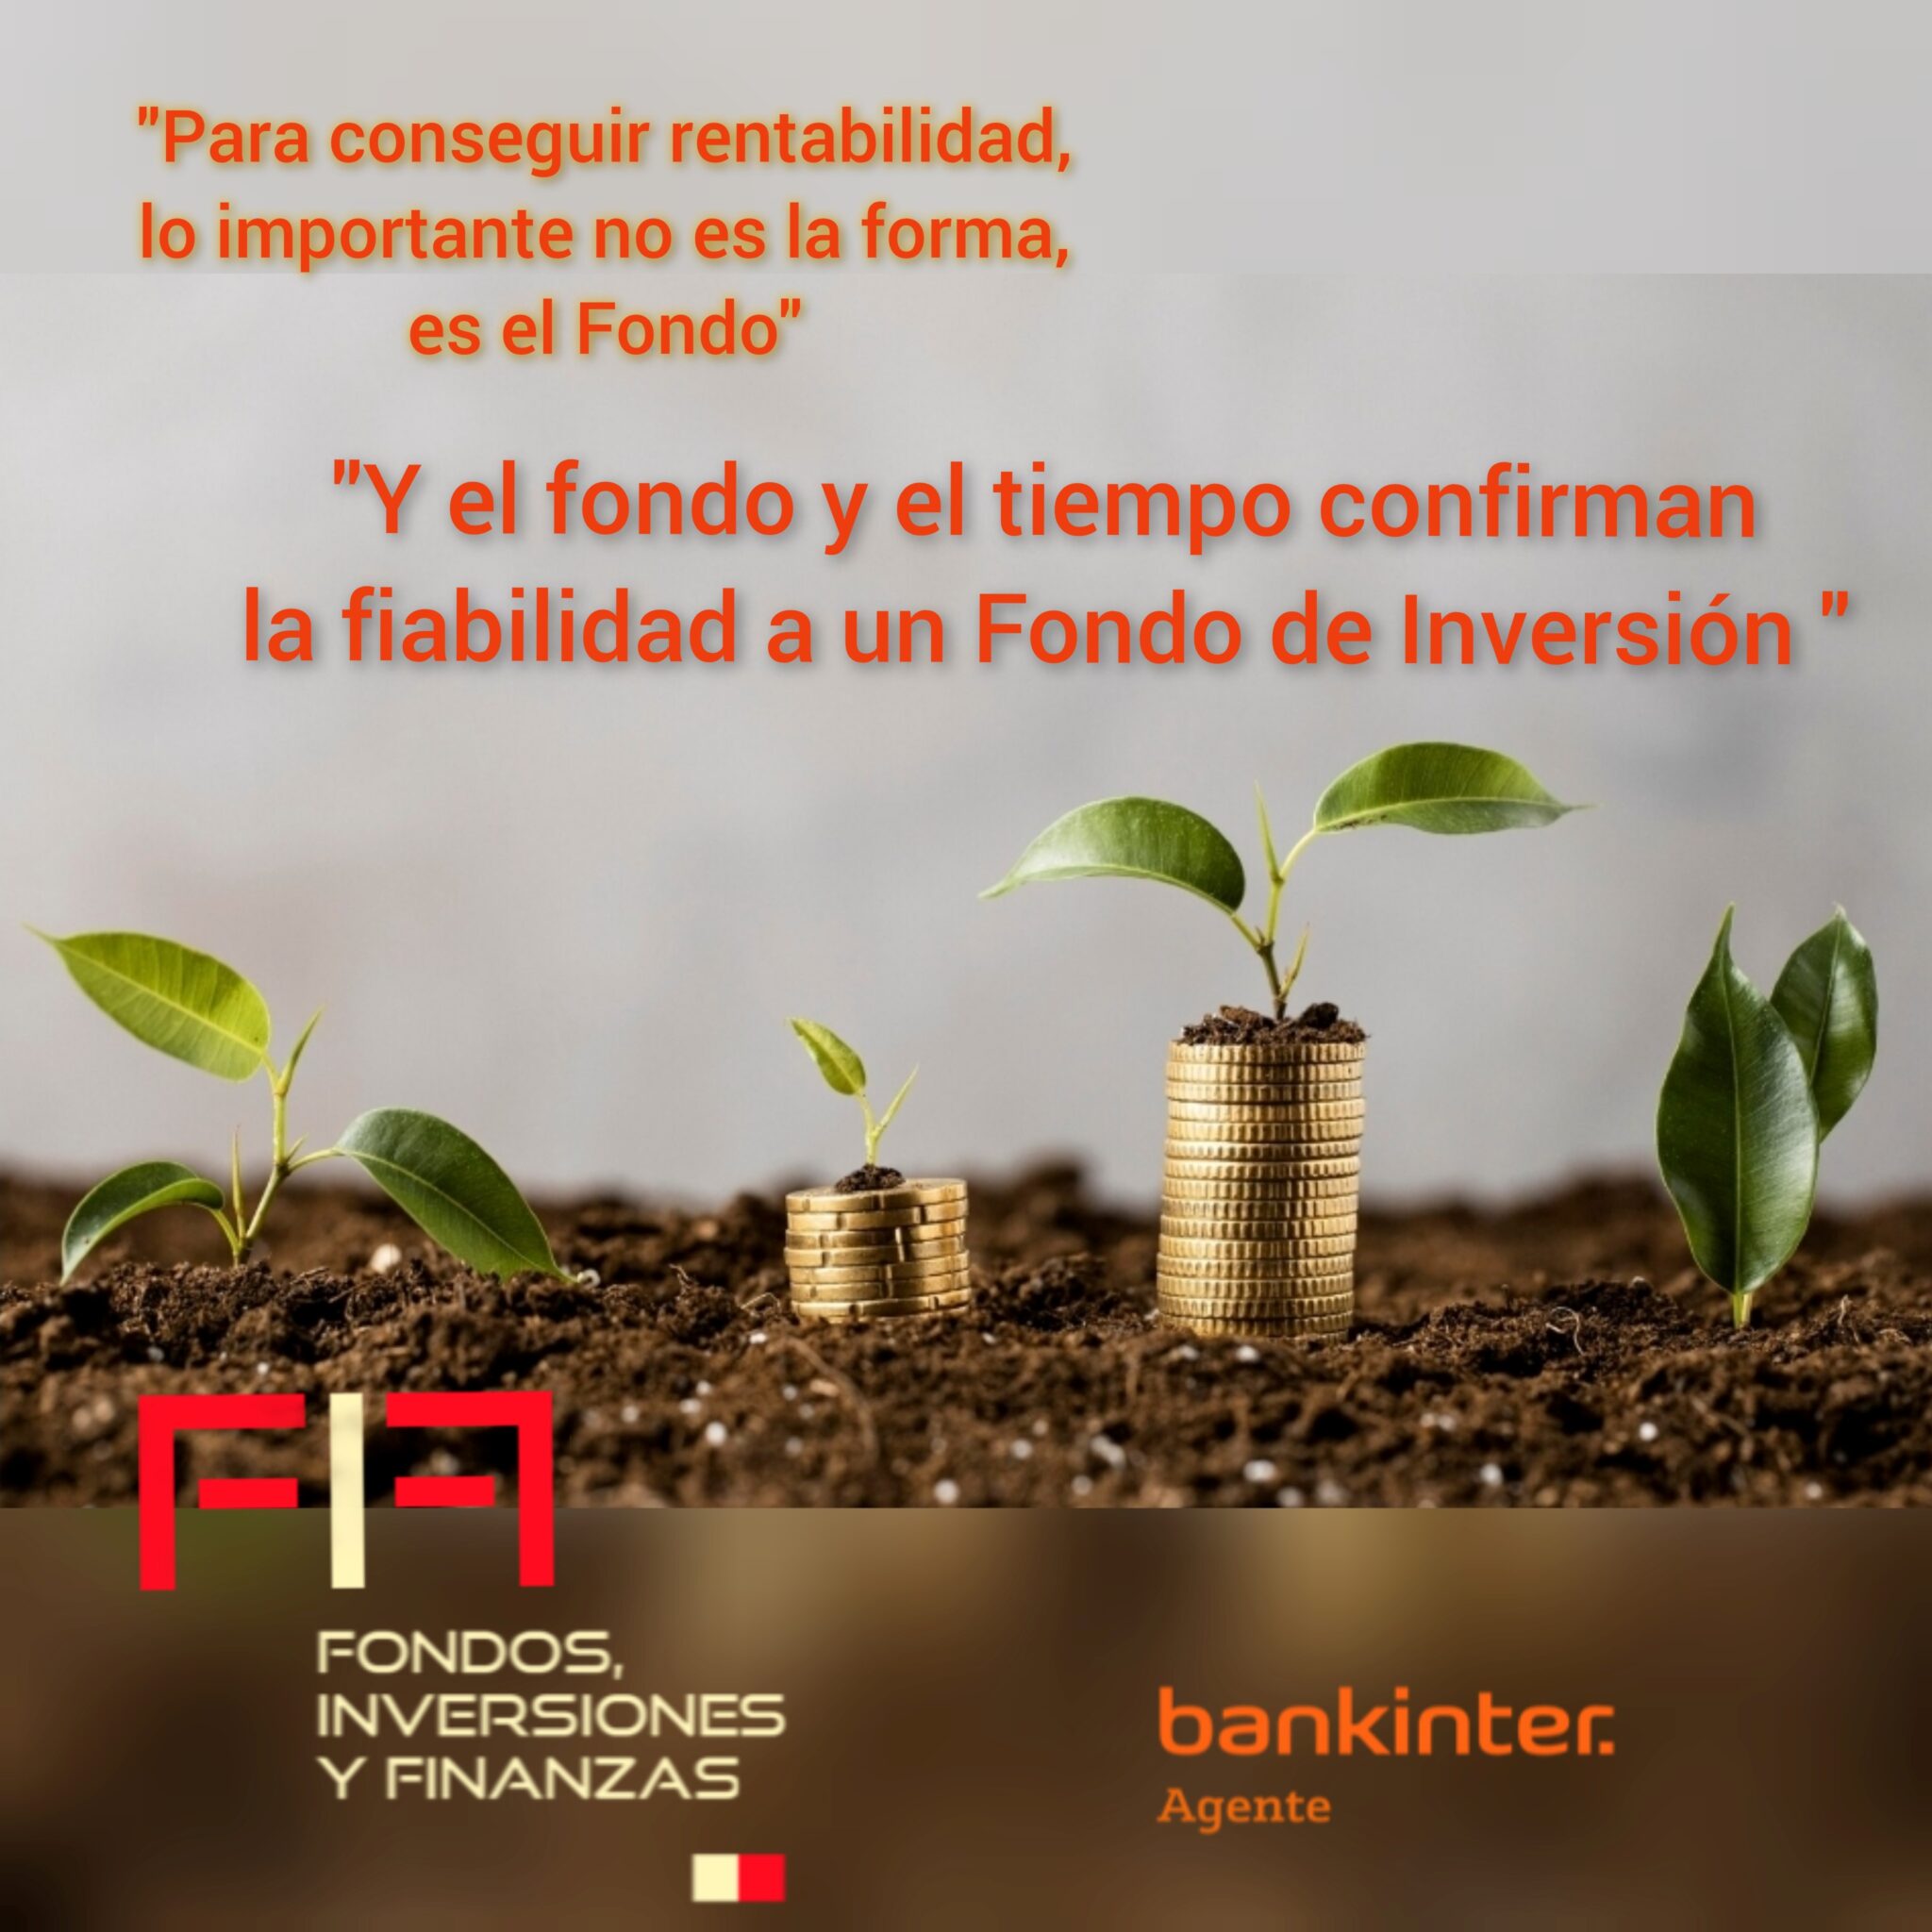 FIFNEWS 23.10.23: «Para conseguir rentabilidad, lo importante no es la forma, es el FONDO. Y el fondo y el tiempo confirman la fiabilidad de un Fondo de Inversión.»